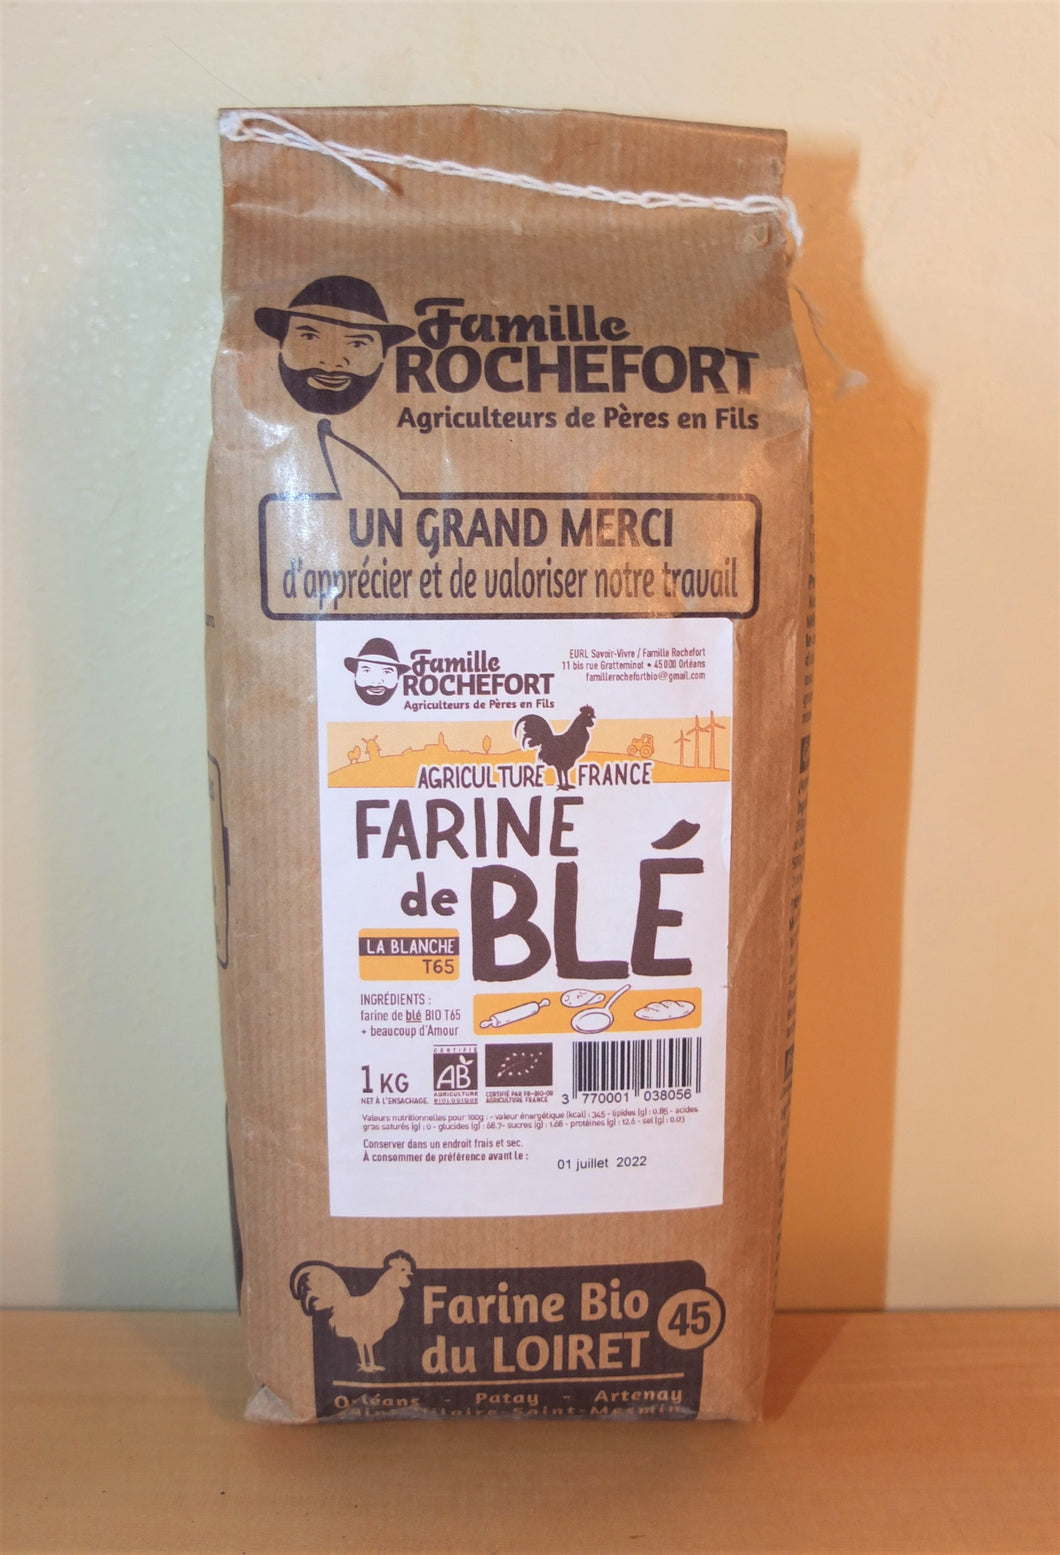 Farine de Blé - 1kg - BIO